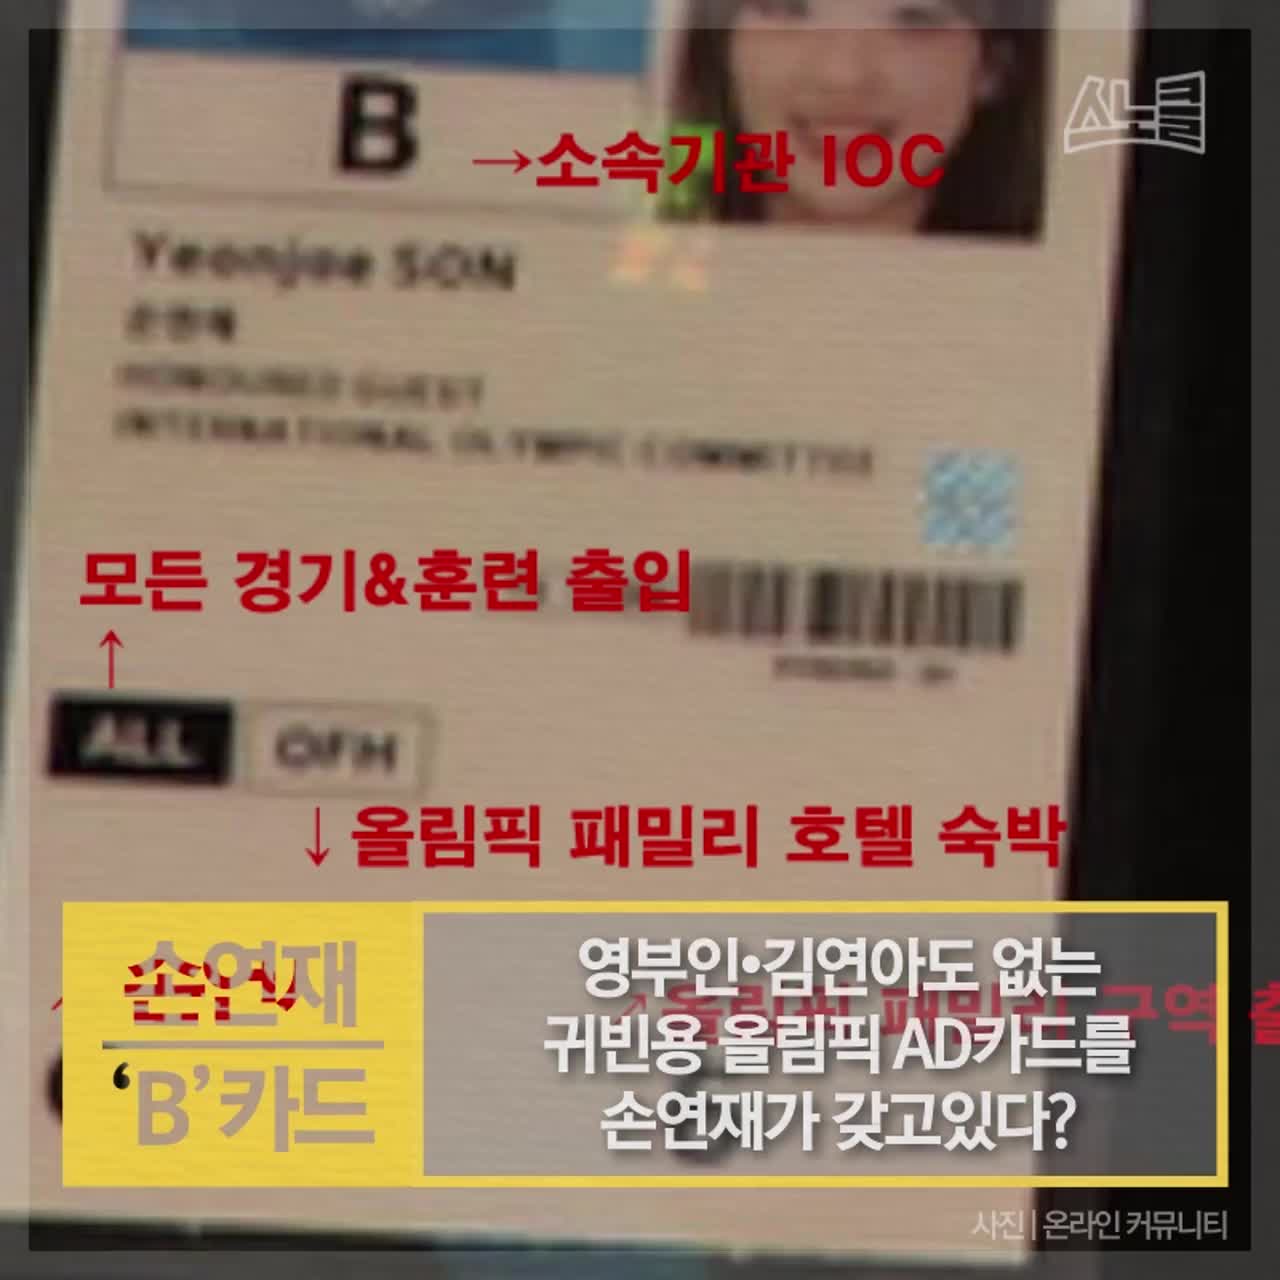 [카드뉴스] 영부인·김연아도 없는 귀빈용 올림픽 AD카드를 손연재가 갖고있다?